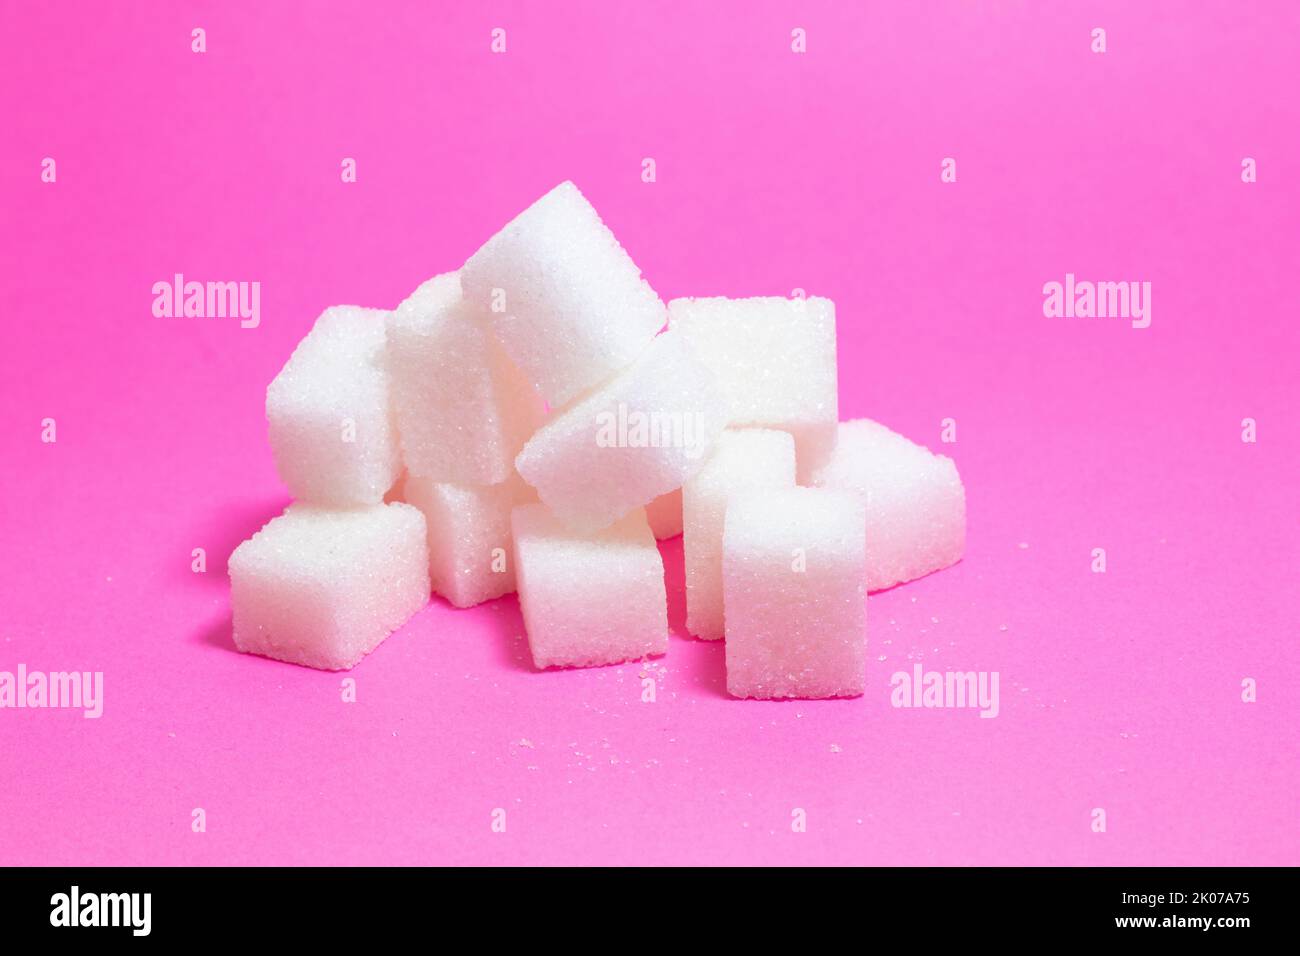 Cubetti di zucchero. Mucchio di cubetti di zucchero isolato su sfondo rosa. Spazio di copia, spazio per il testo. Nessuna gente, nessuno. Concetto di idea alimentare nocivo. Foto Stock